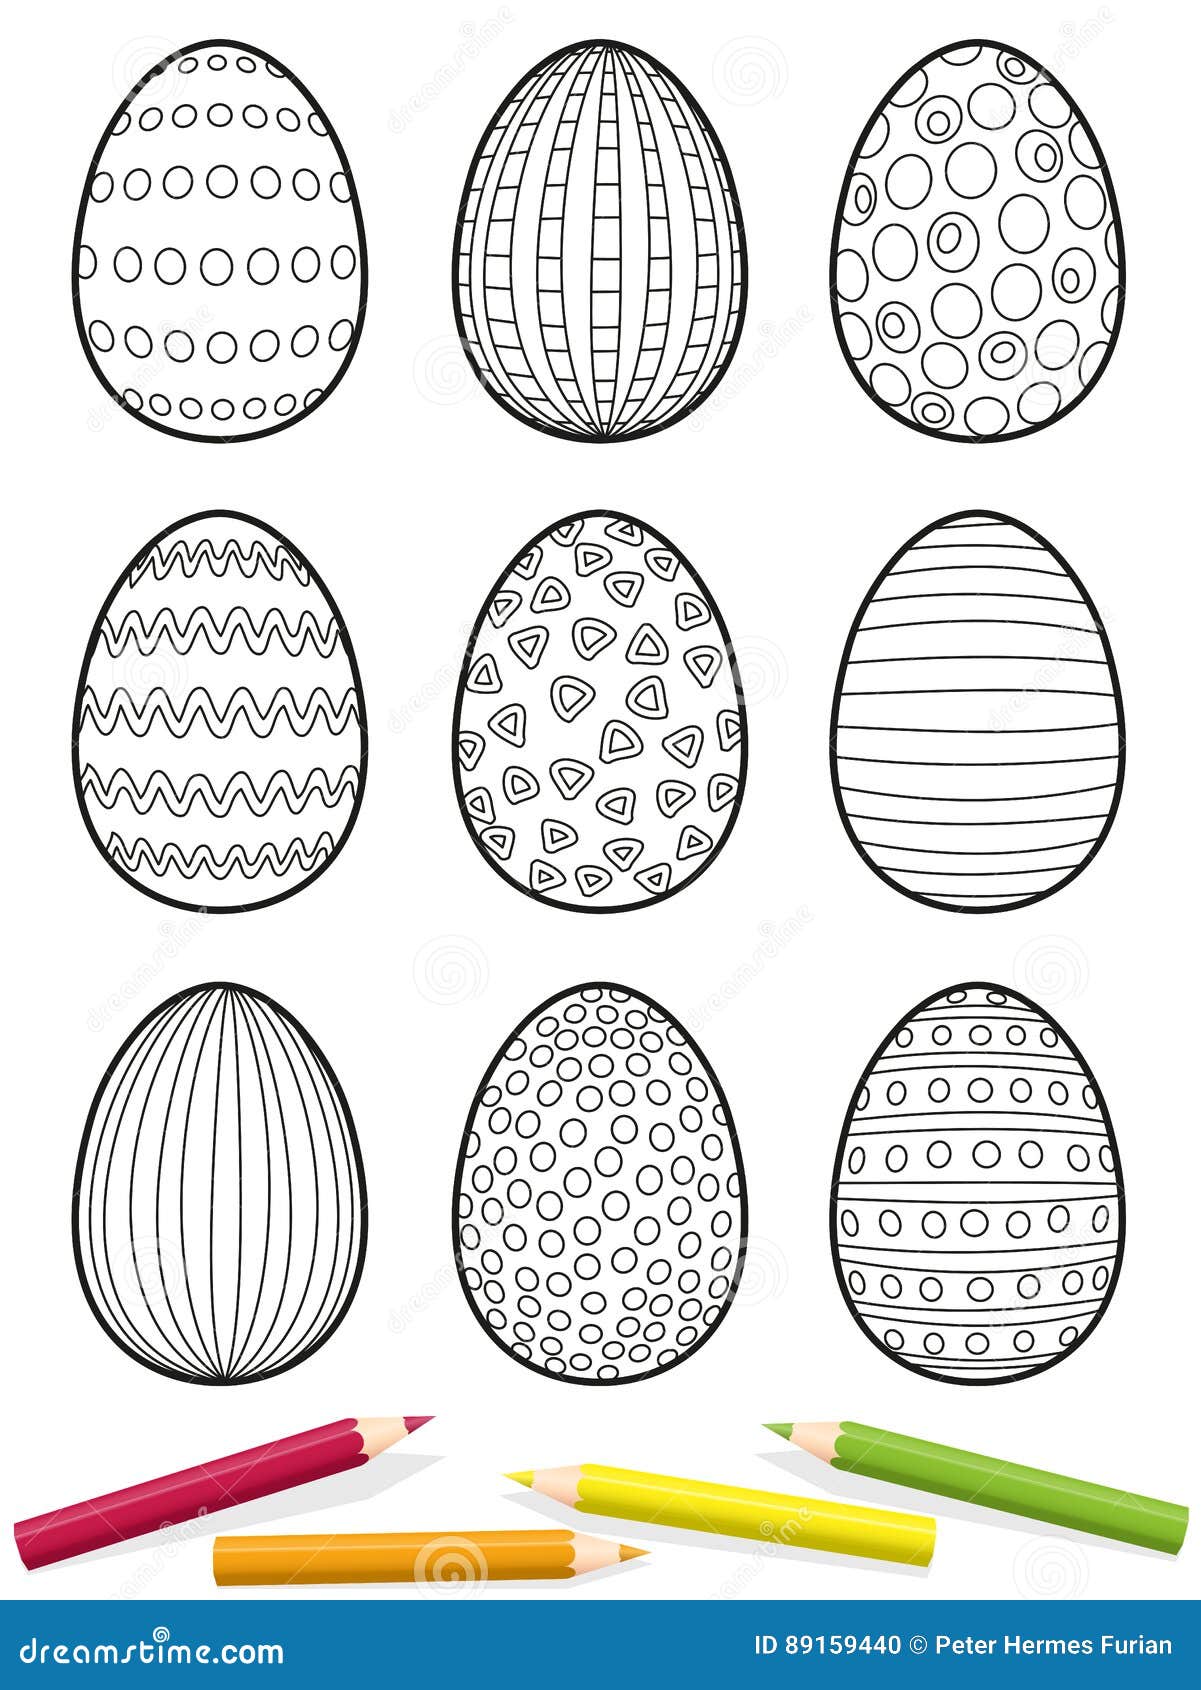 简单可爱鸡蛋手绘画法图片大全💛巧艺网